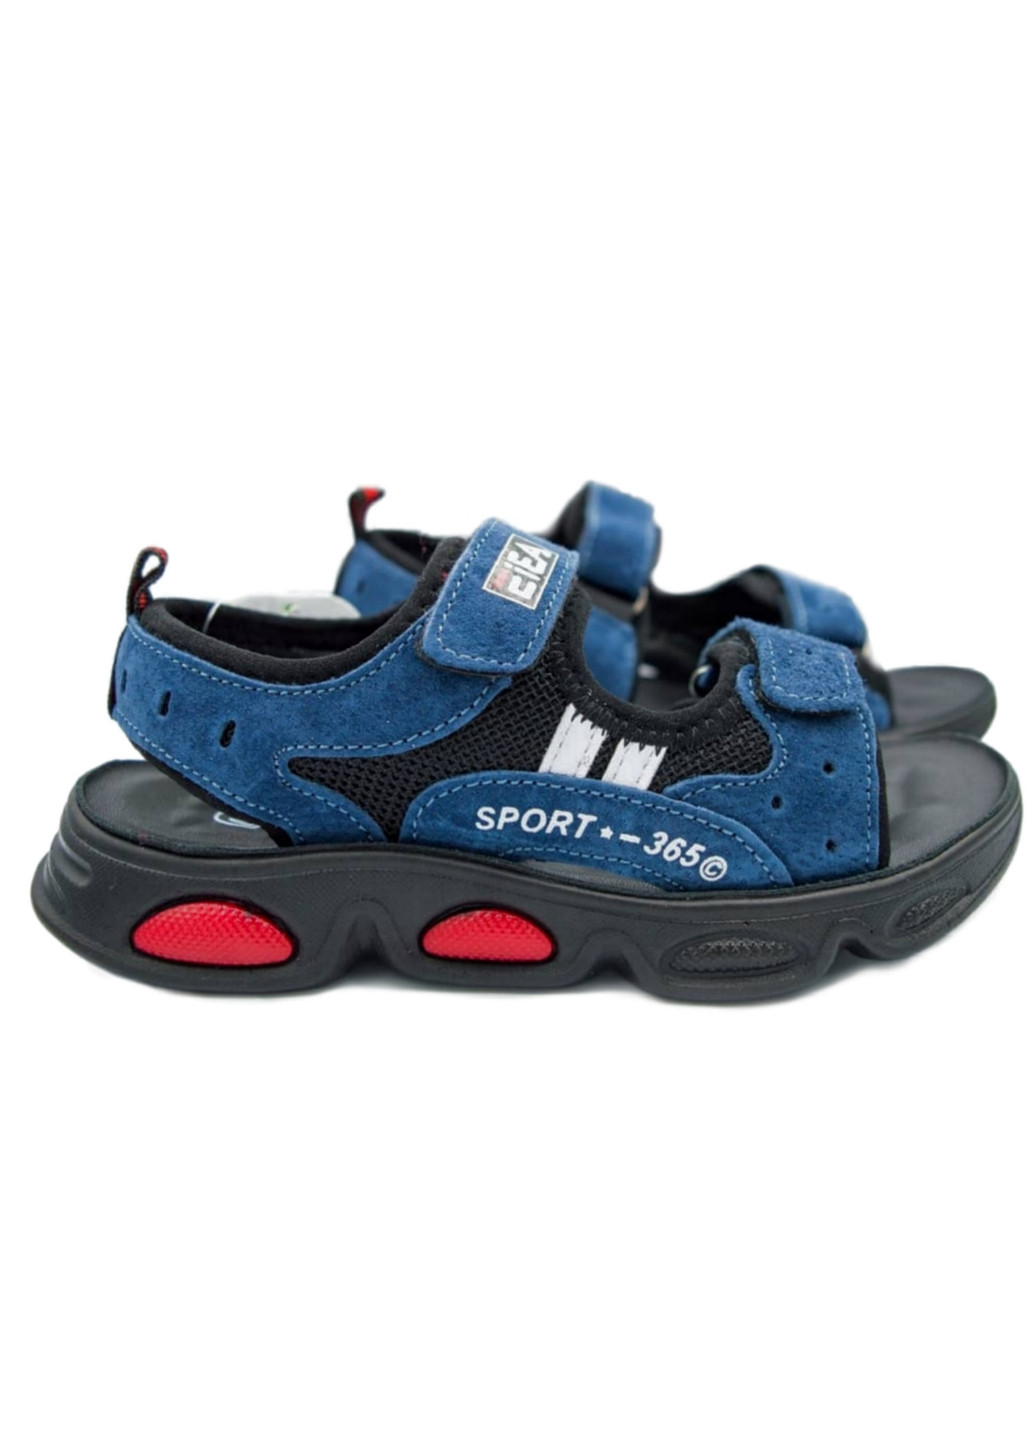 Синие спортивные детские сандалии для мальчика Kimbo-O на липучке